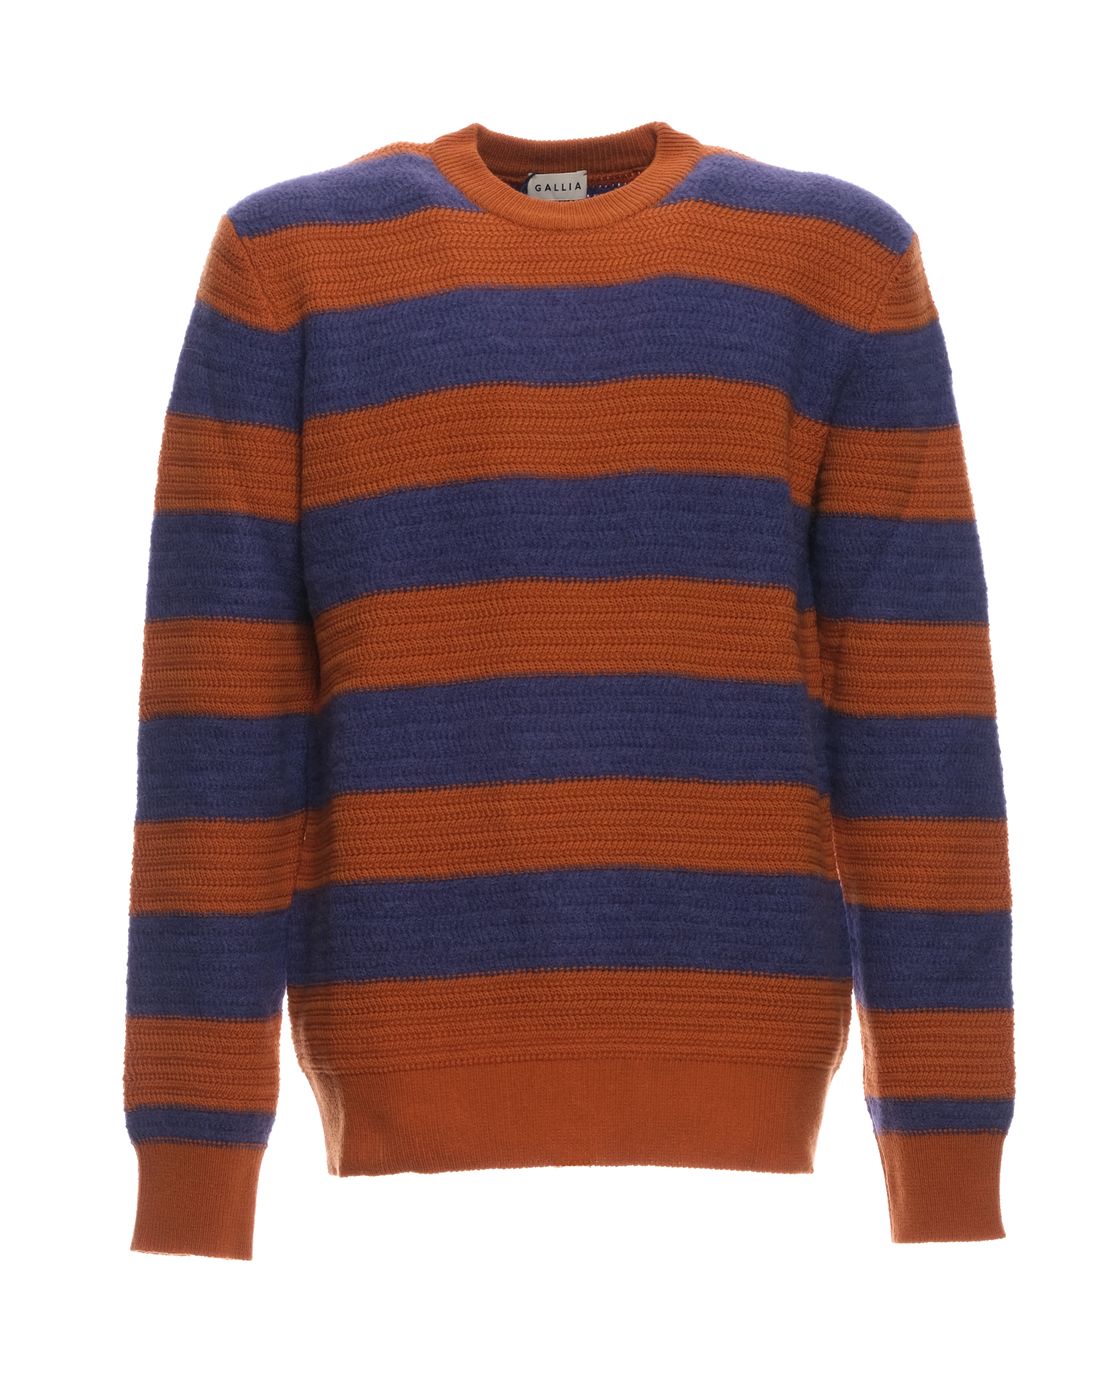 Sweater for man LM U7201 099 MEIR GALLIA